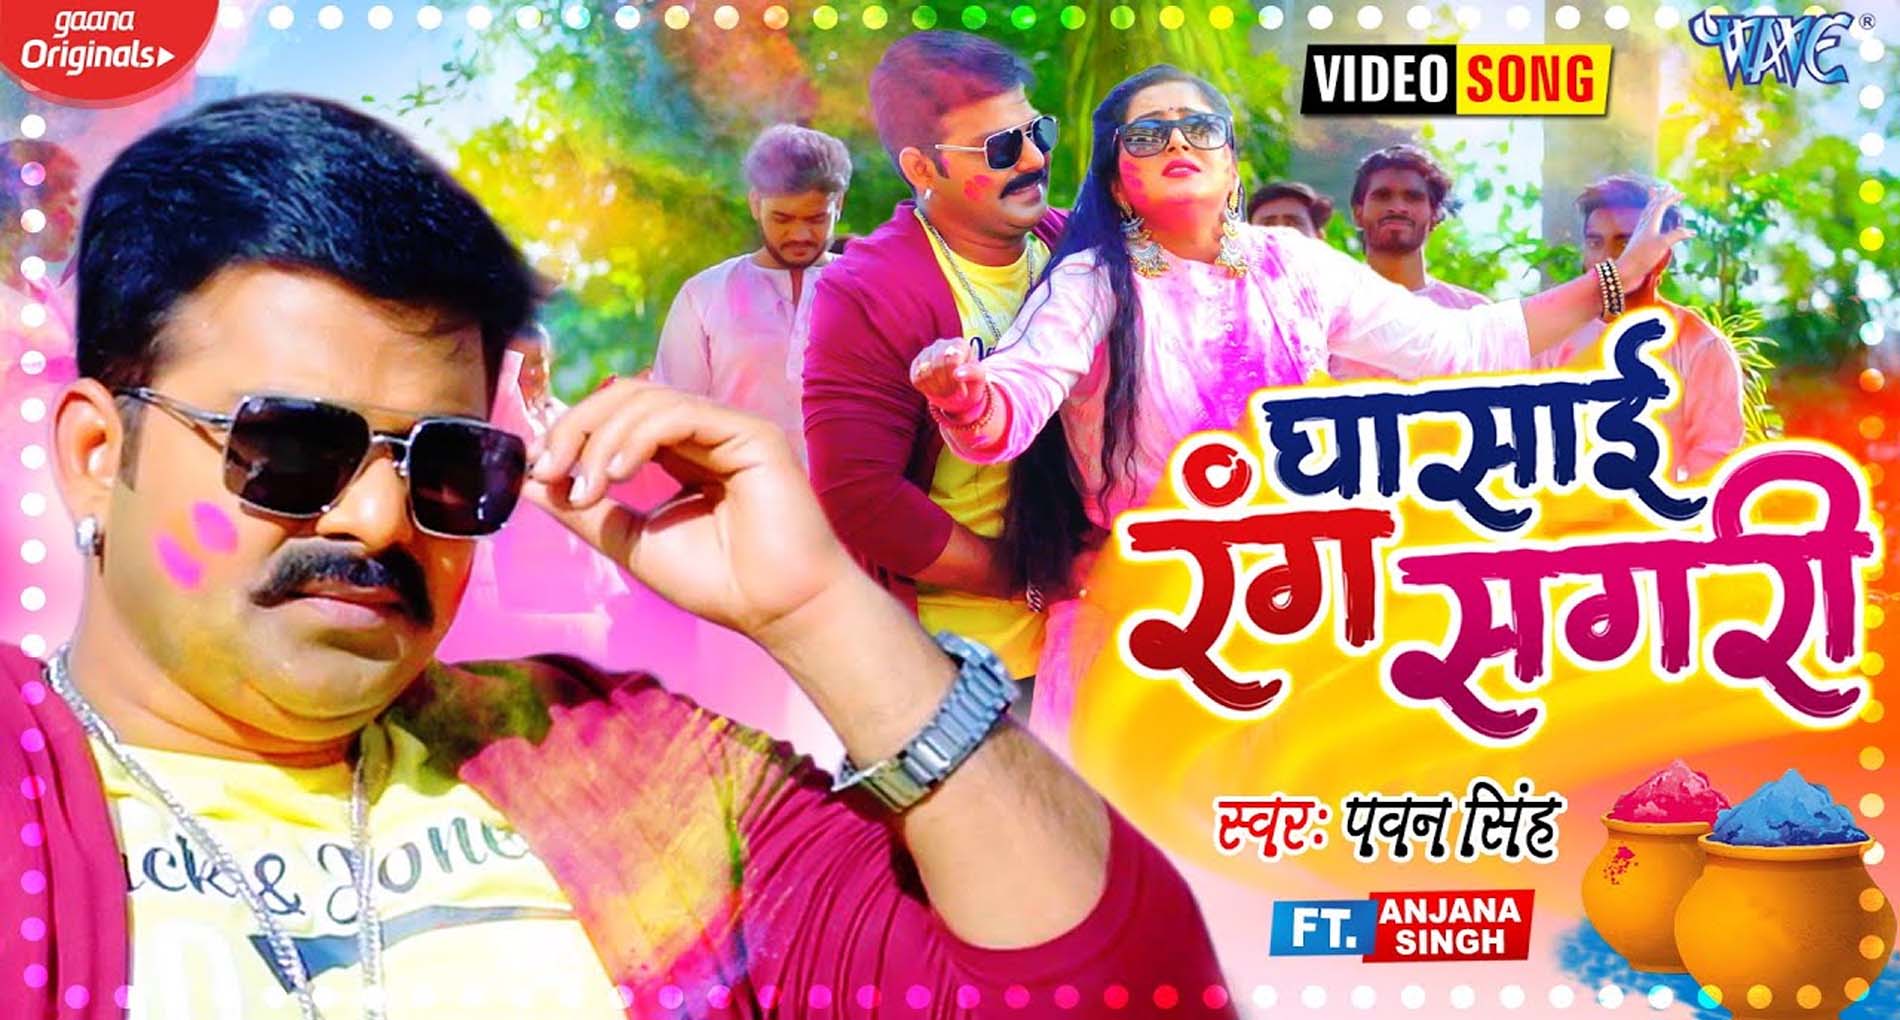 Pawan Singh Hit Holi Song: पवन सिंह के नए होली सॉन्ग ने उड़ाया गर्दा! देखें वीडियो